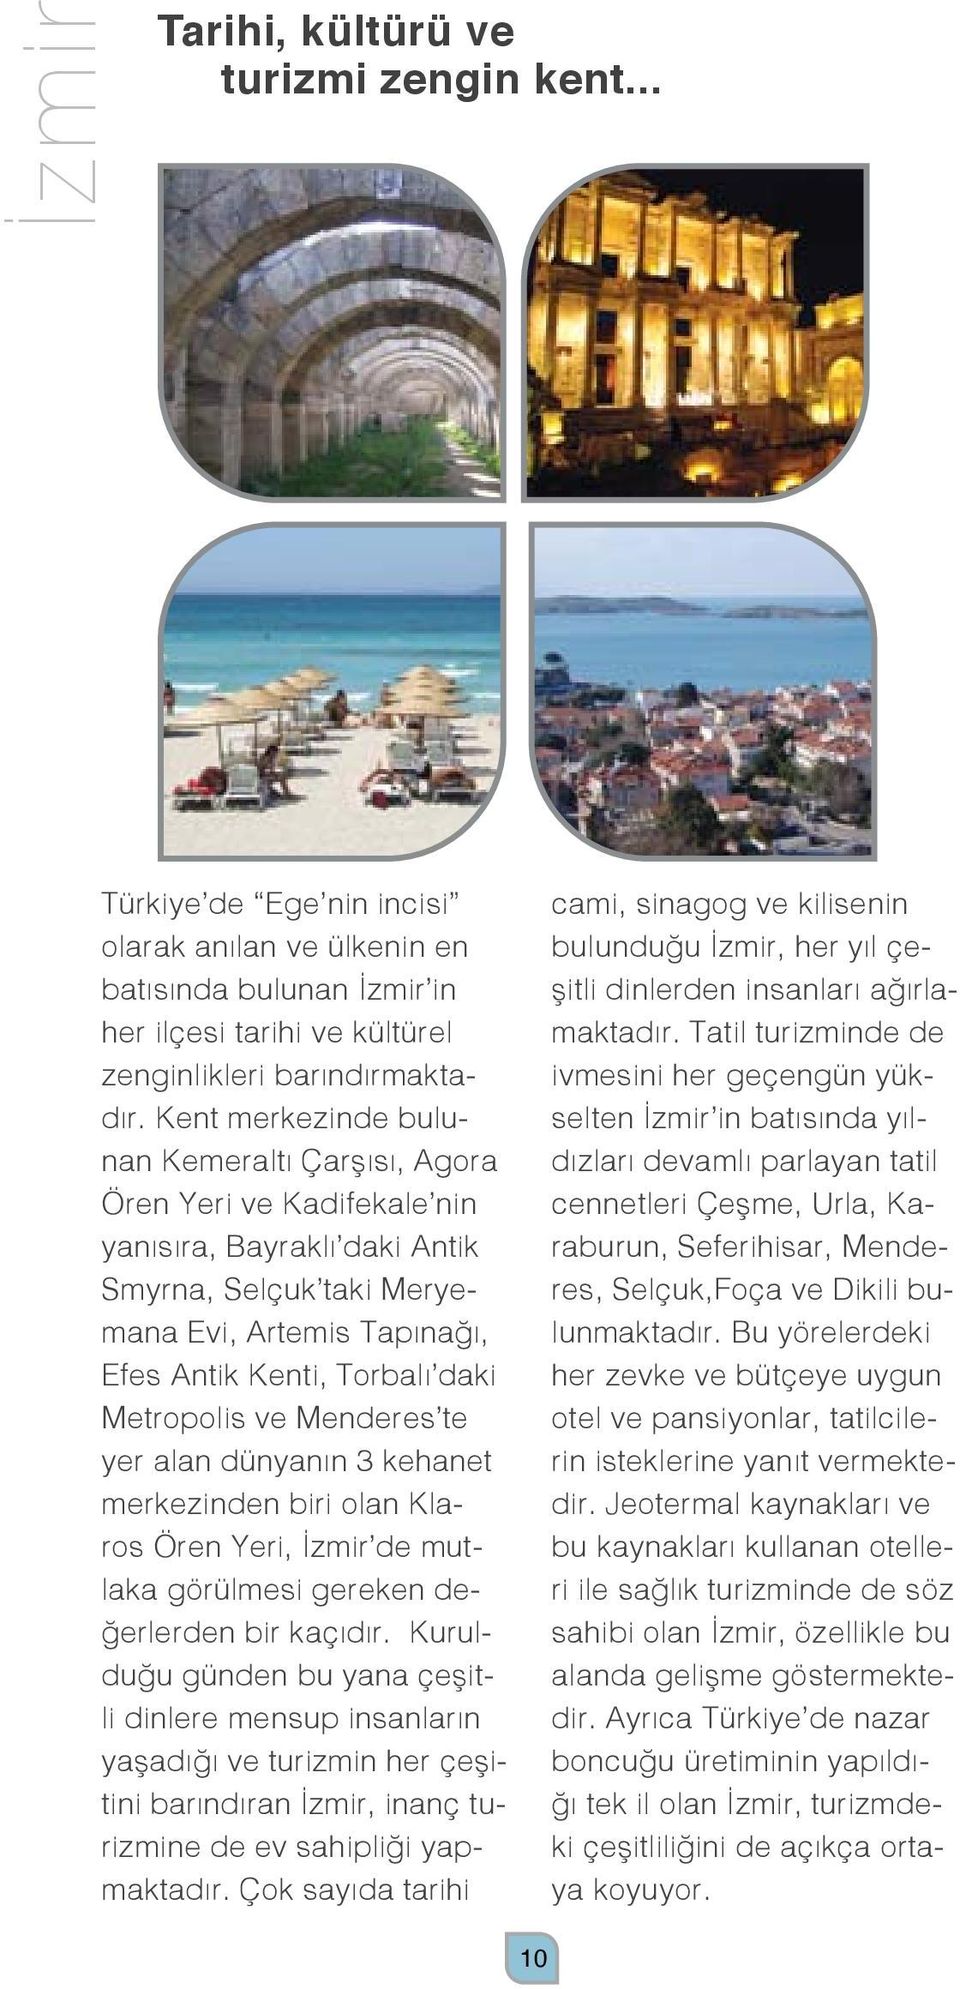 Metropolis ve Menderes te yer alan dünyanın 3 kehanet merkezinden biri olan Klaros Ören Yeri, İzmir de mutlaka görülmesi gereken değerlerden bir kaçıdır.